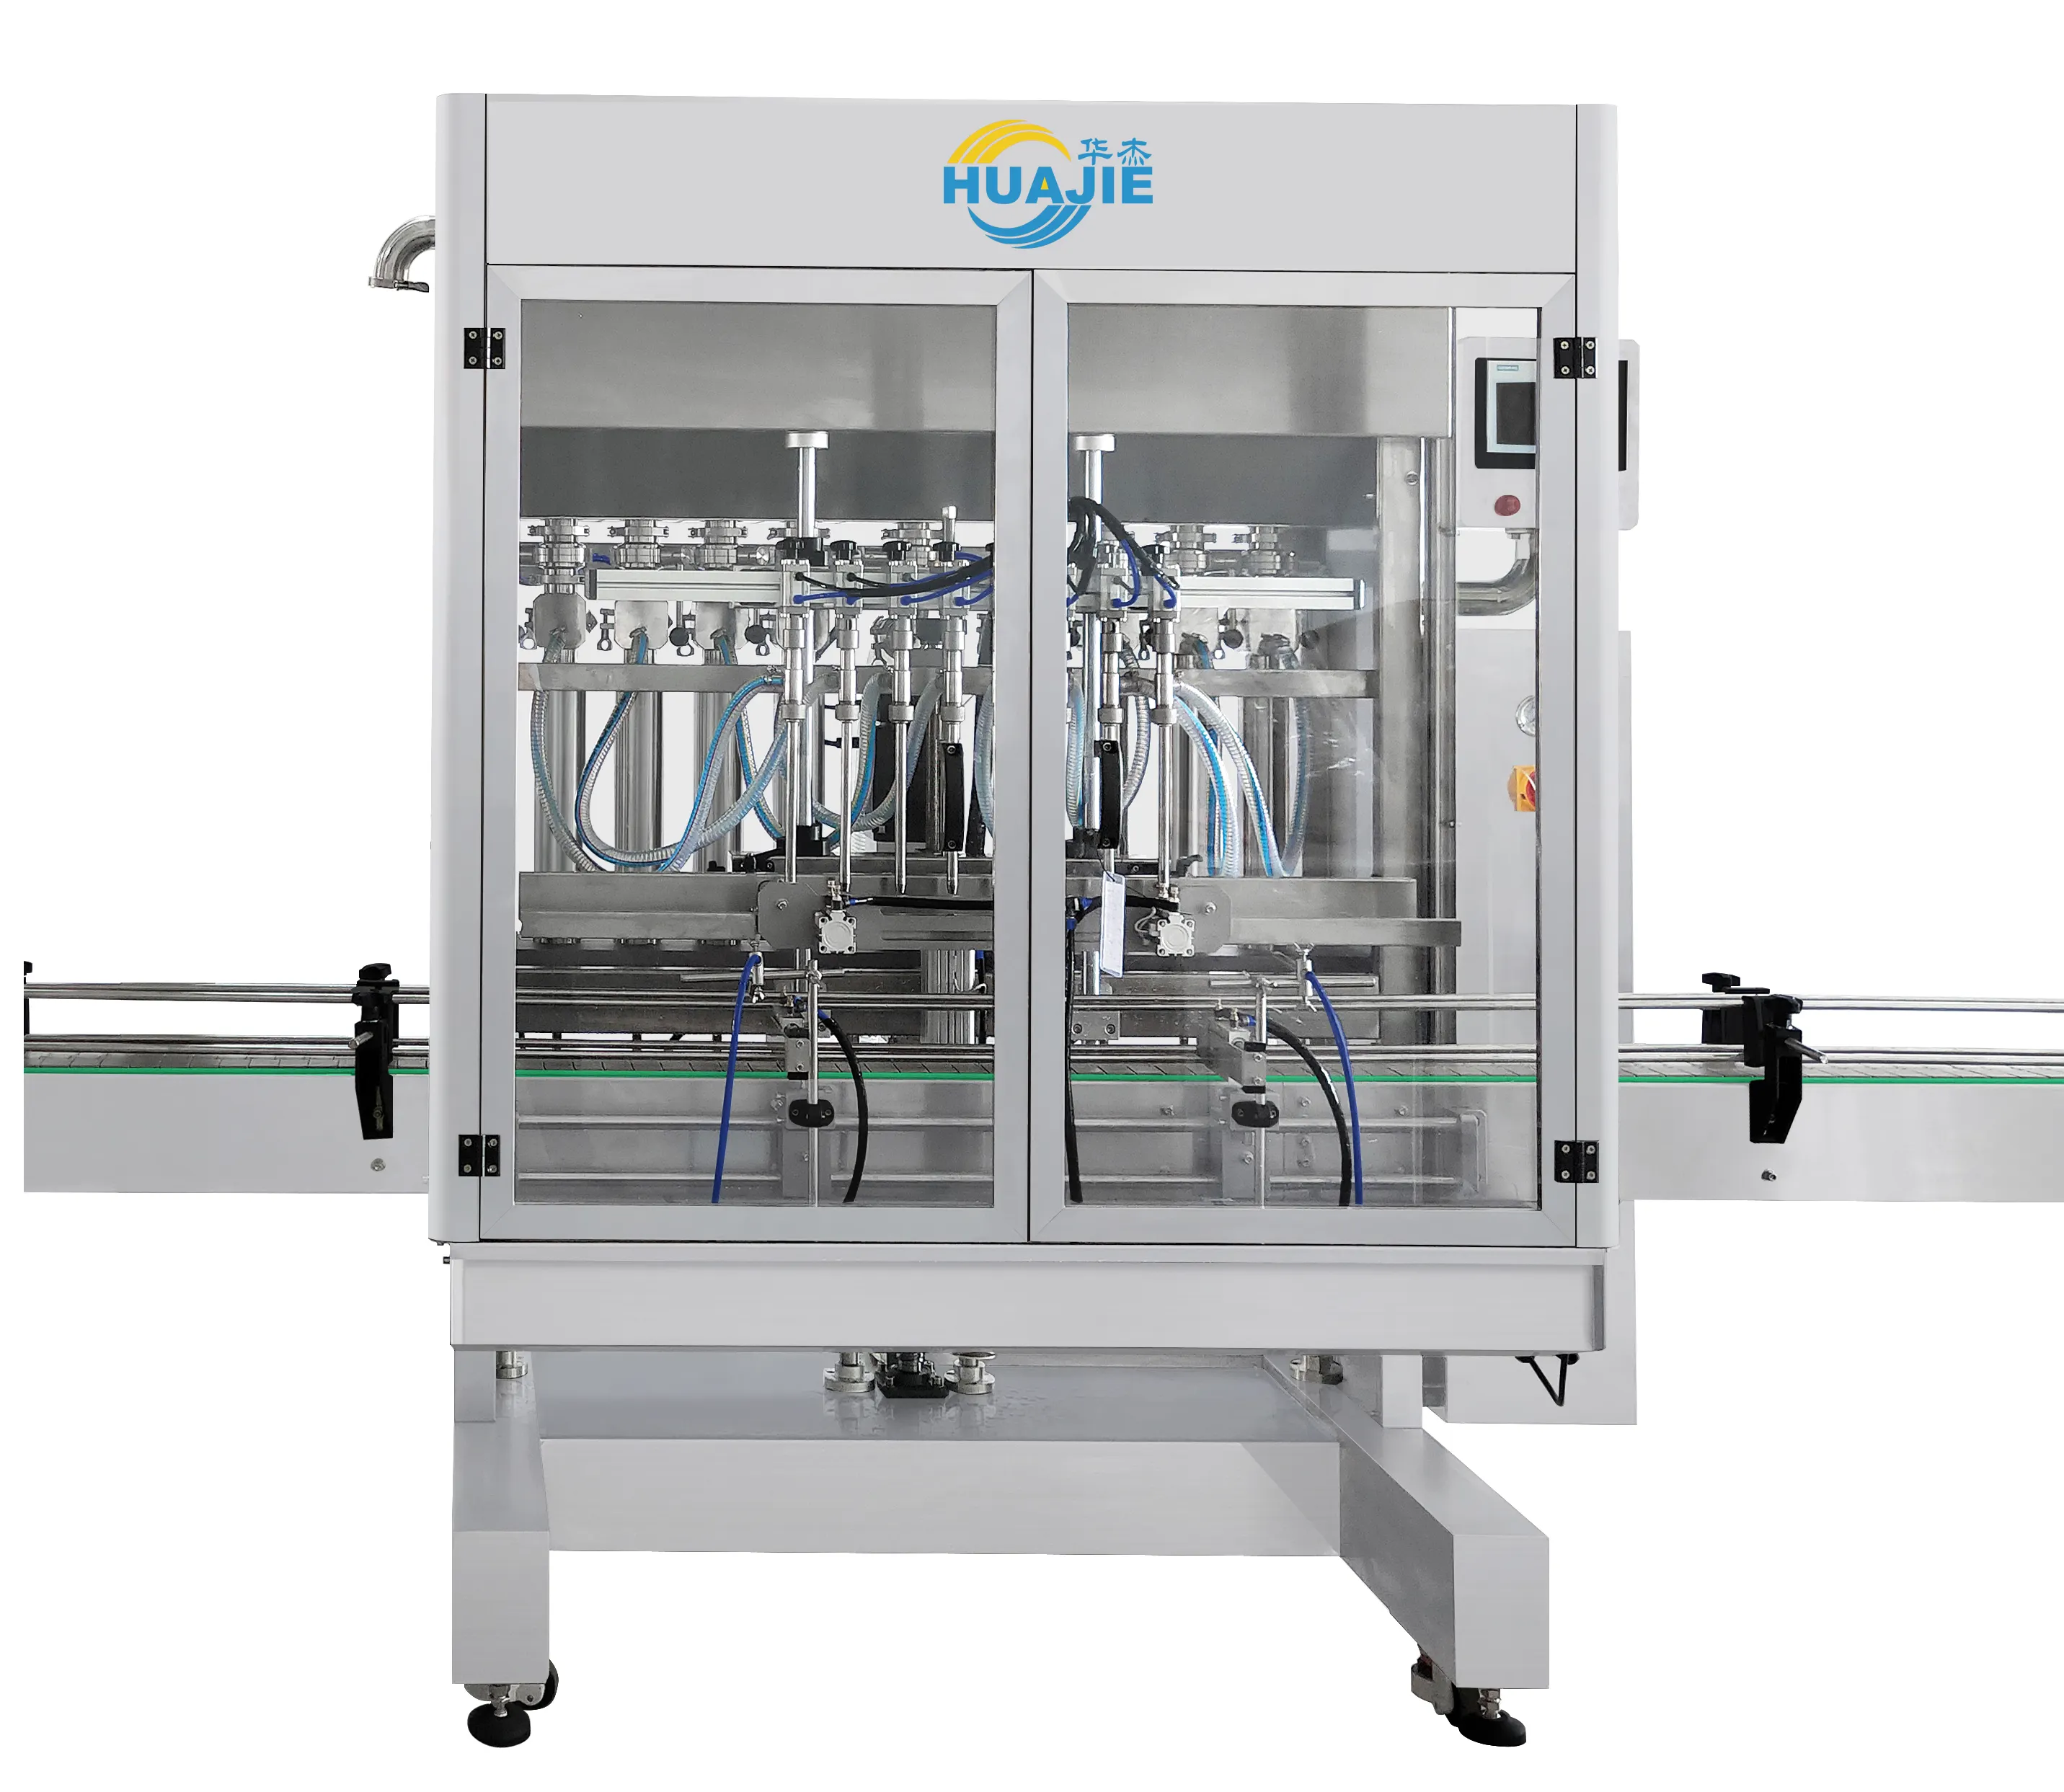 HUAJIE automatische Flaschenabfüllungsausrüstung Abfüllmaschine Abfülllinie für Öl- und Flüssigkeitsproduktion